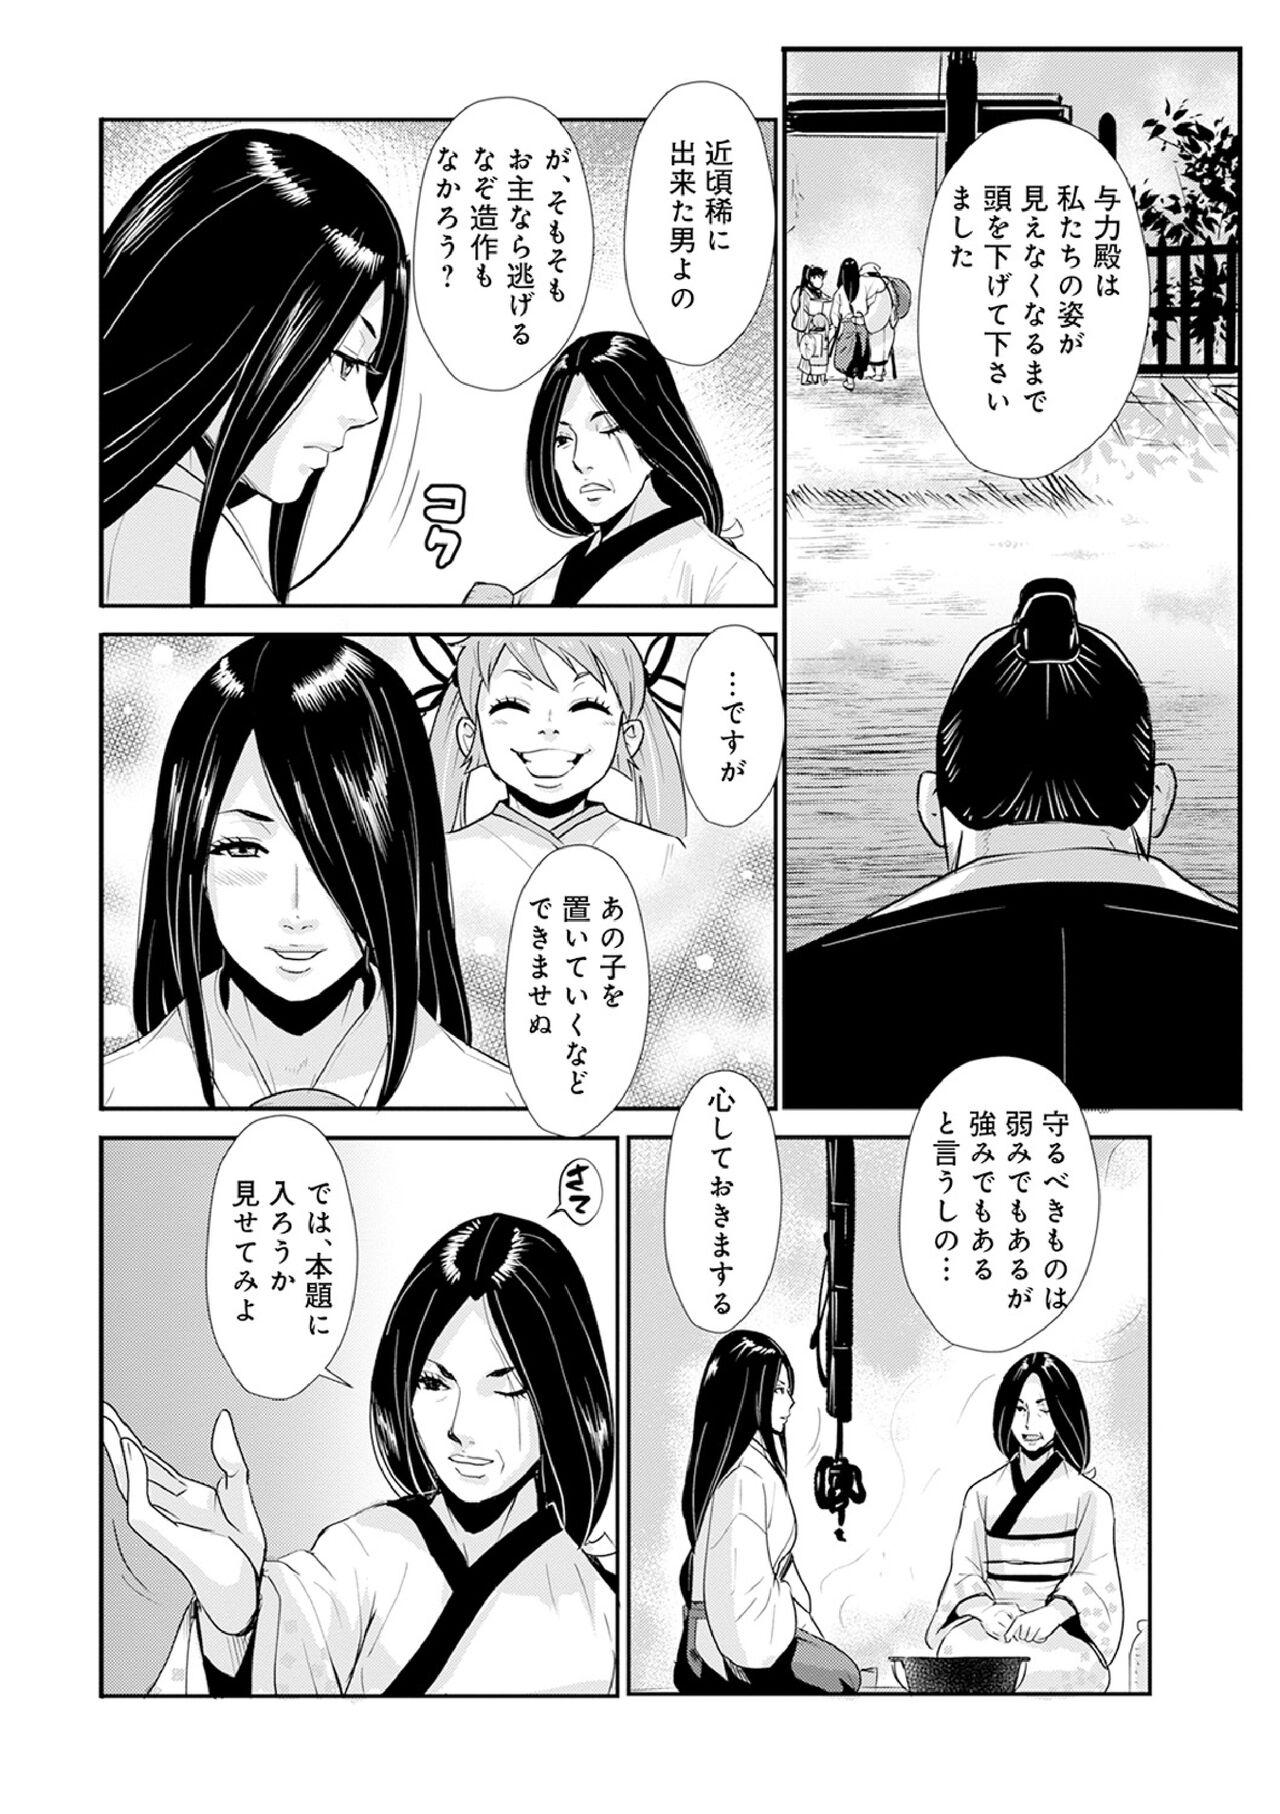 Chica Harami samurai 12 Couple Porn - Page 8